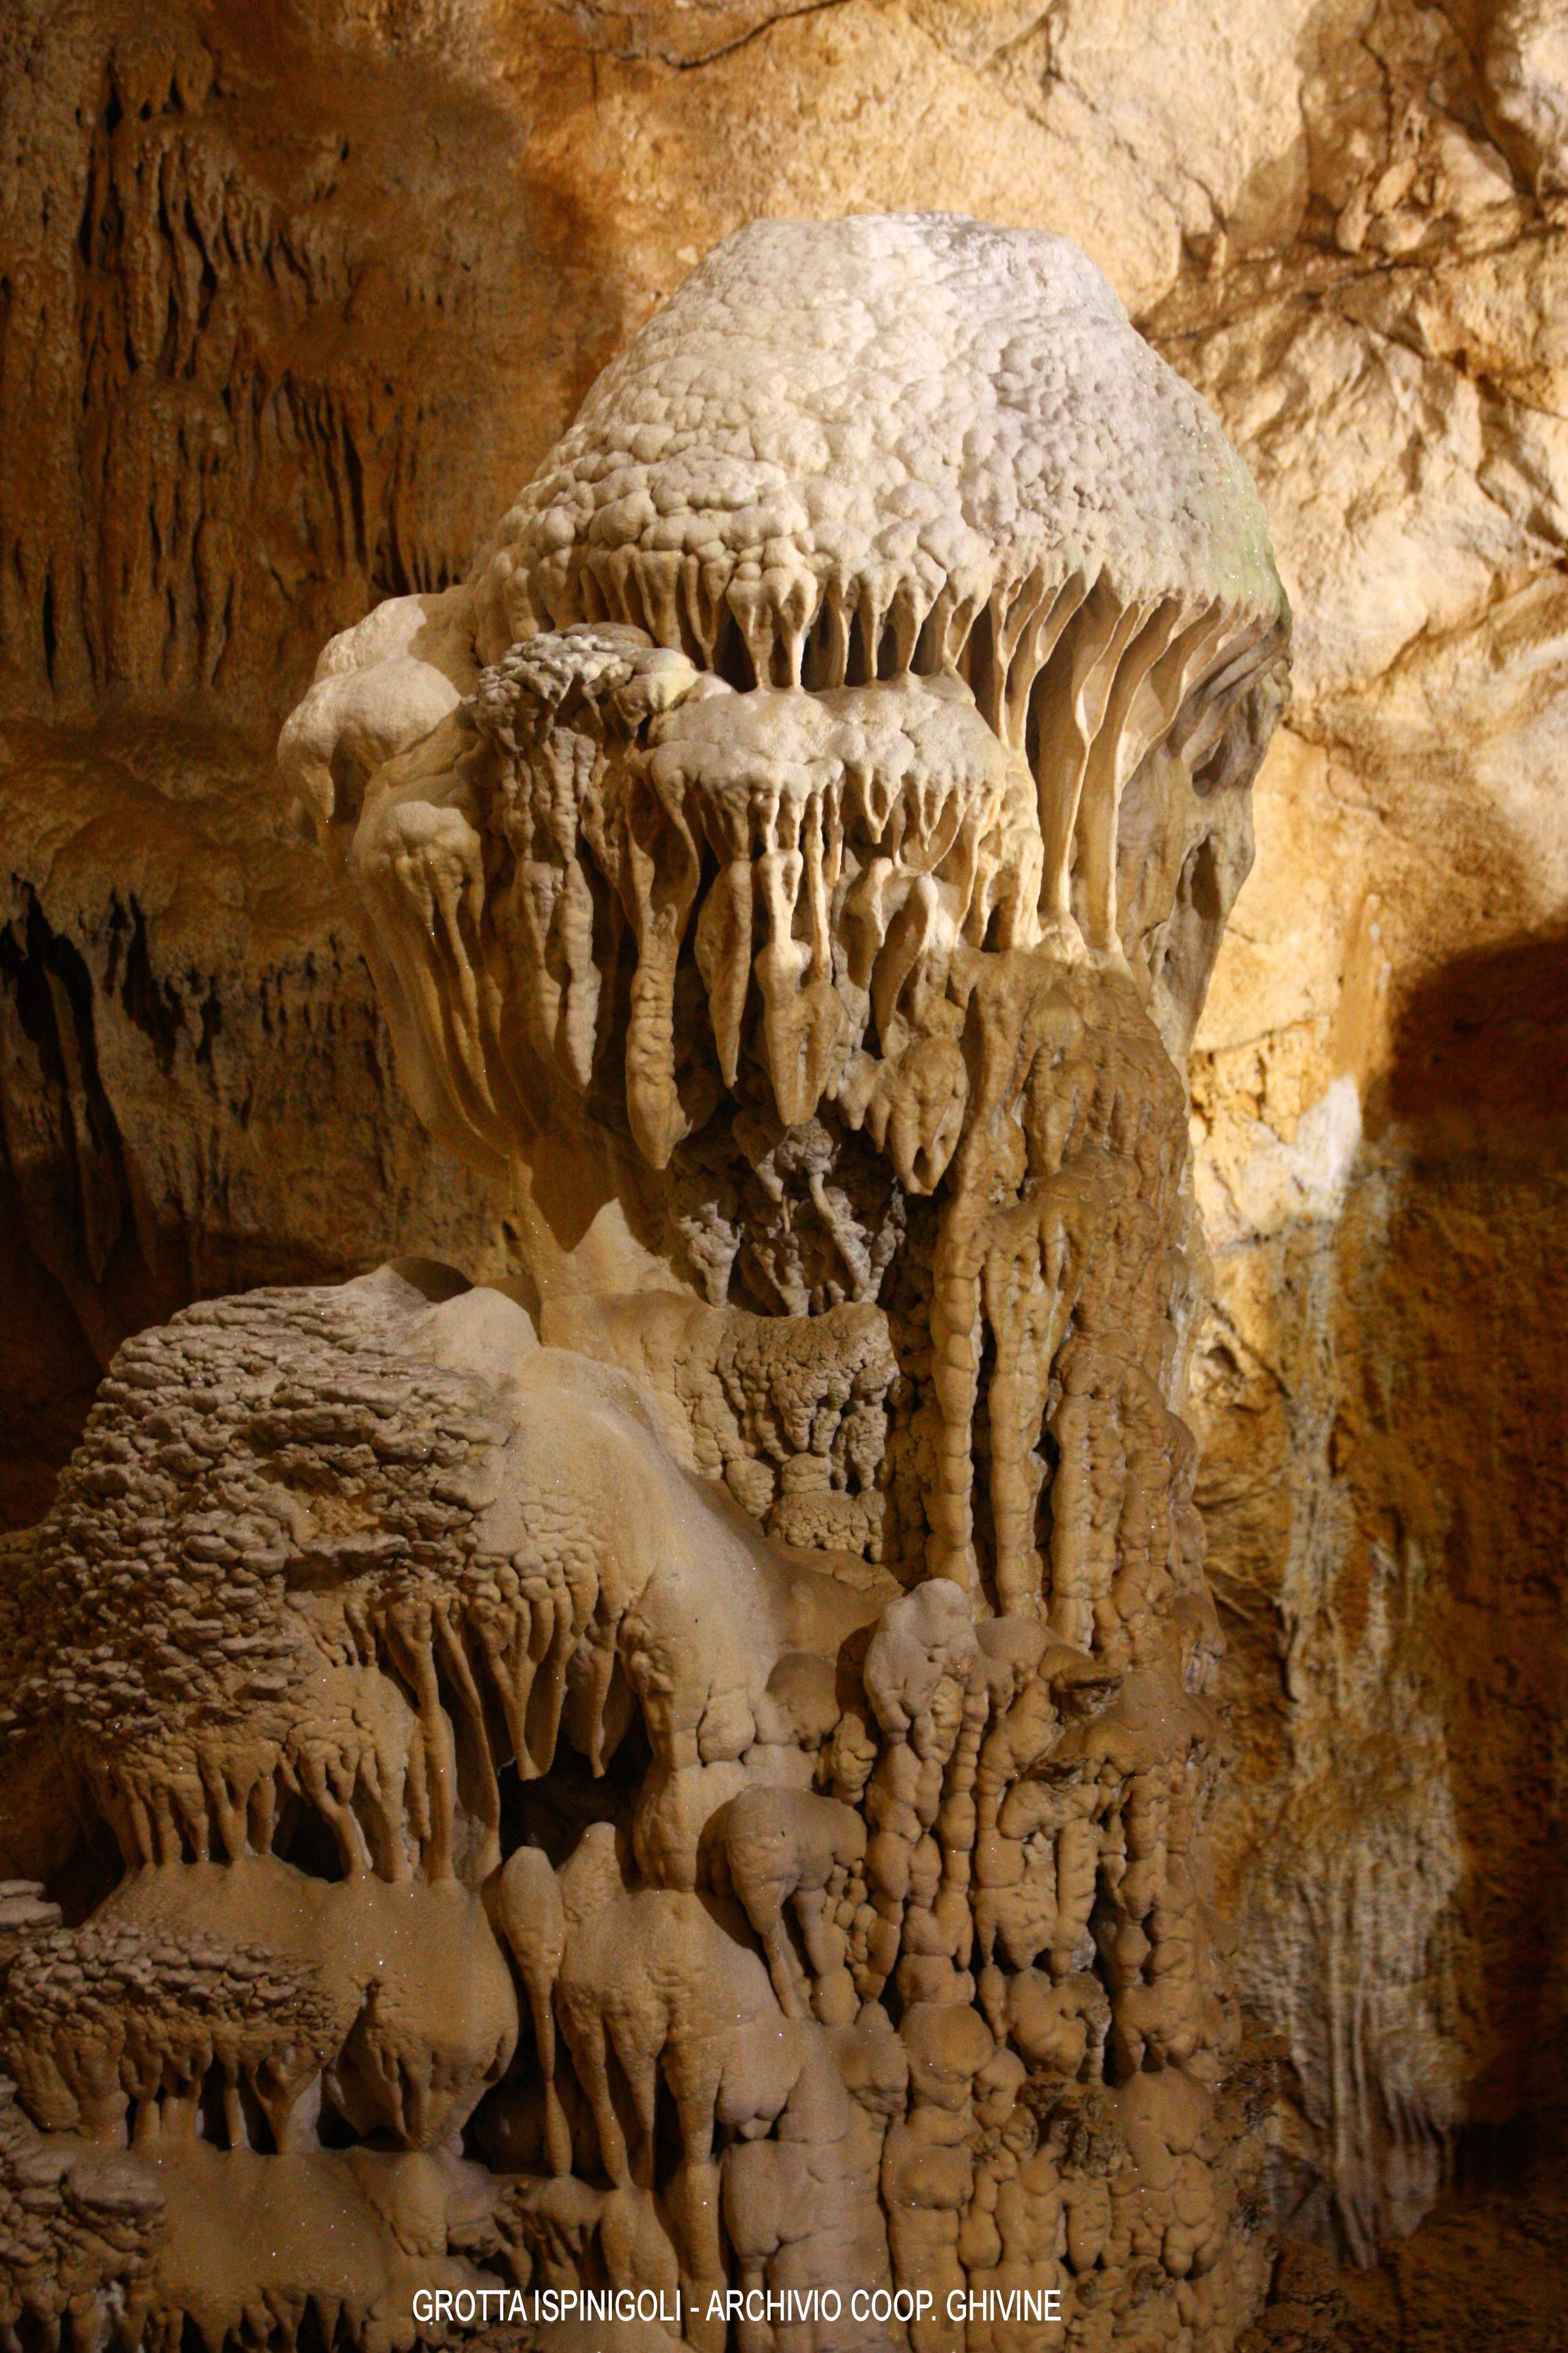 Grotta Ispinigoli concrezioni